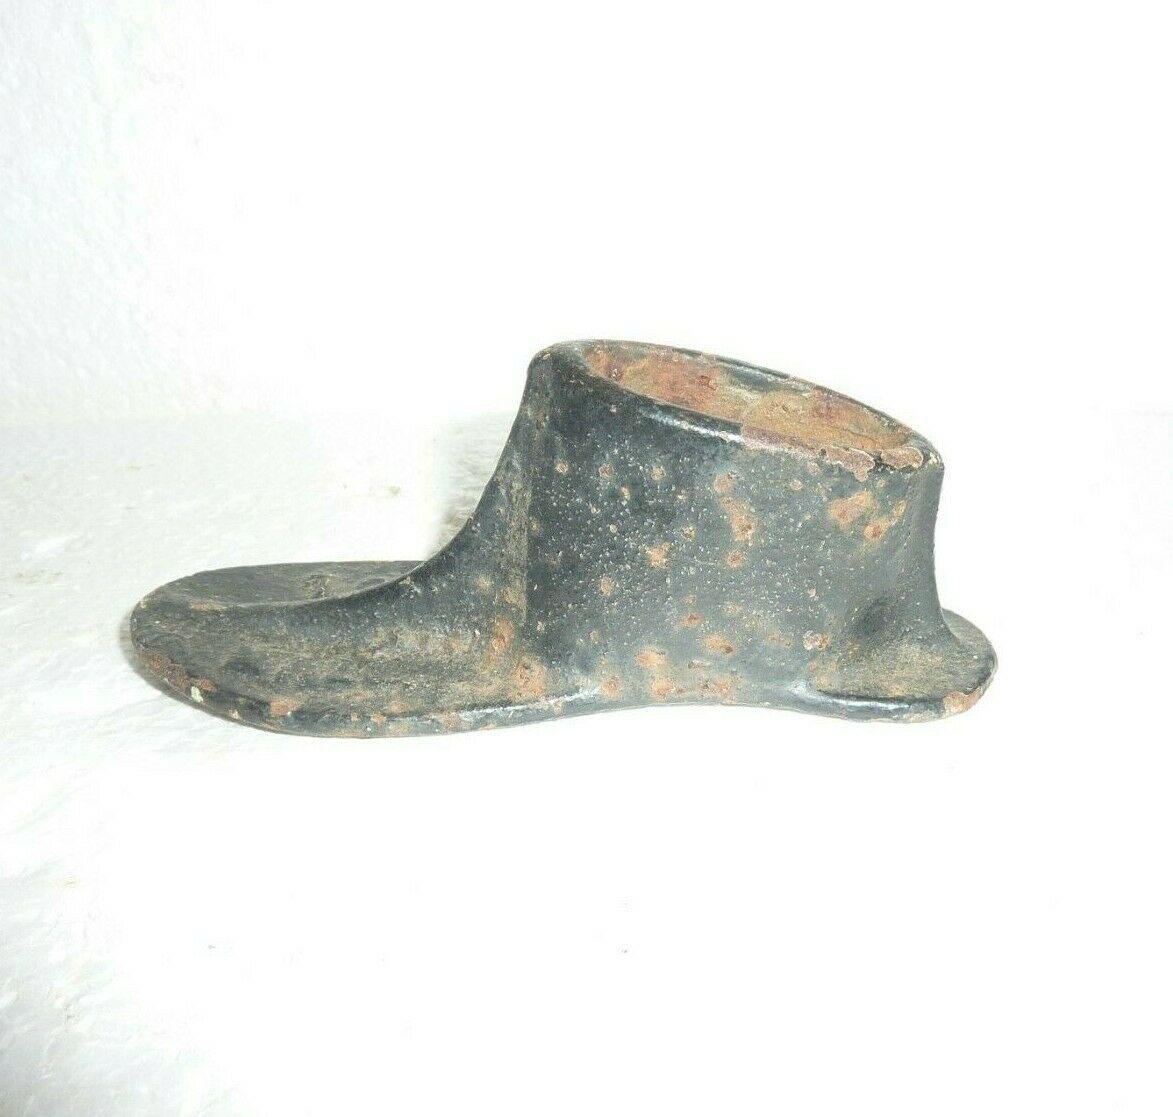 Antique Cobbler's Child's Toddler Shoe Form Last Cast Iron  Mall 5" Long  S-36